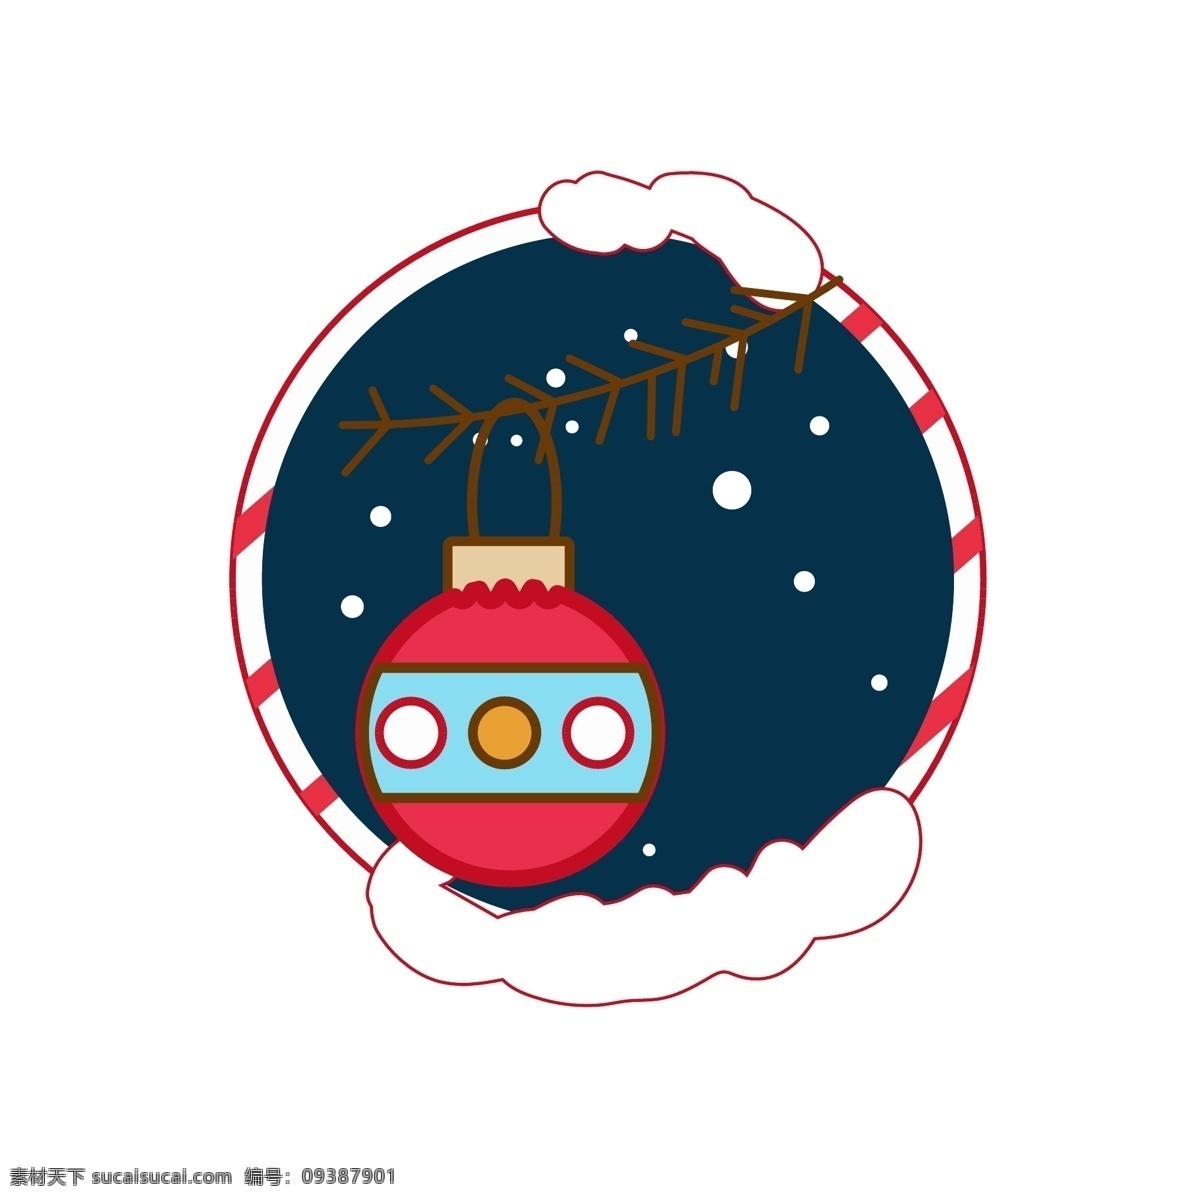 圣诞节 元素 装饰 图标 雪人 蝴蝶结 铃铛 雪花 球 边框 红色